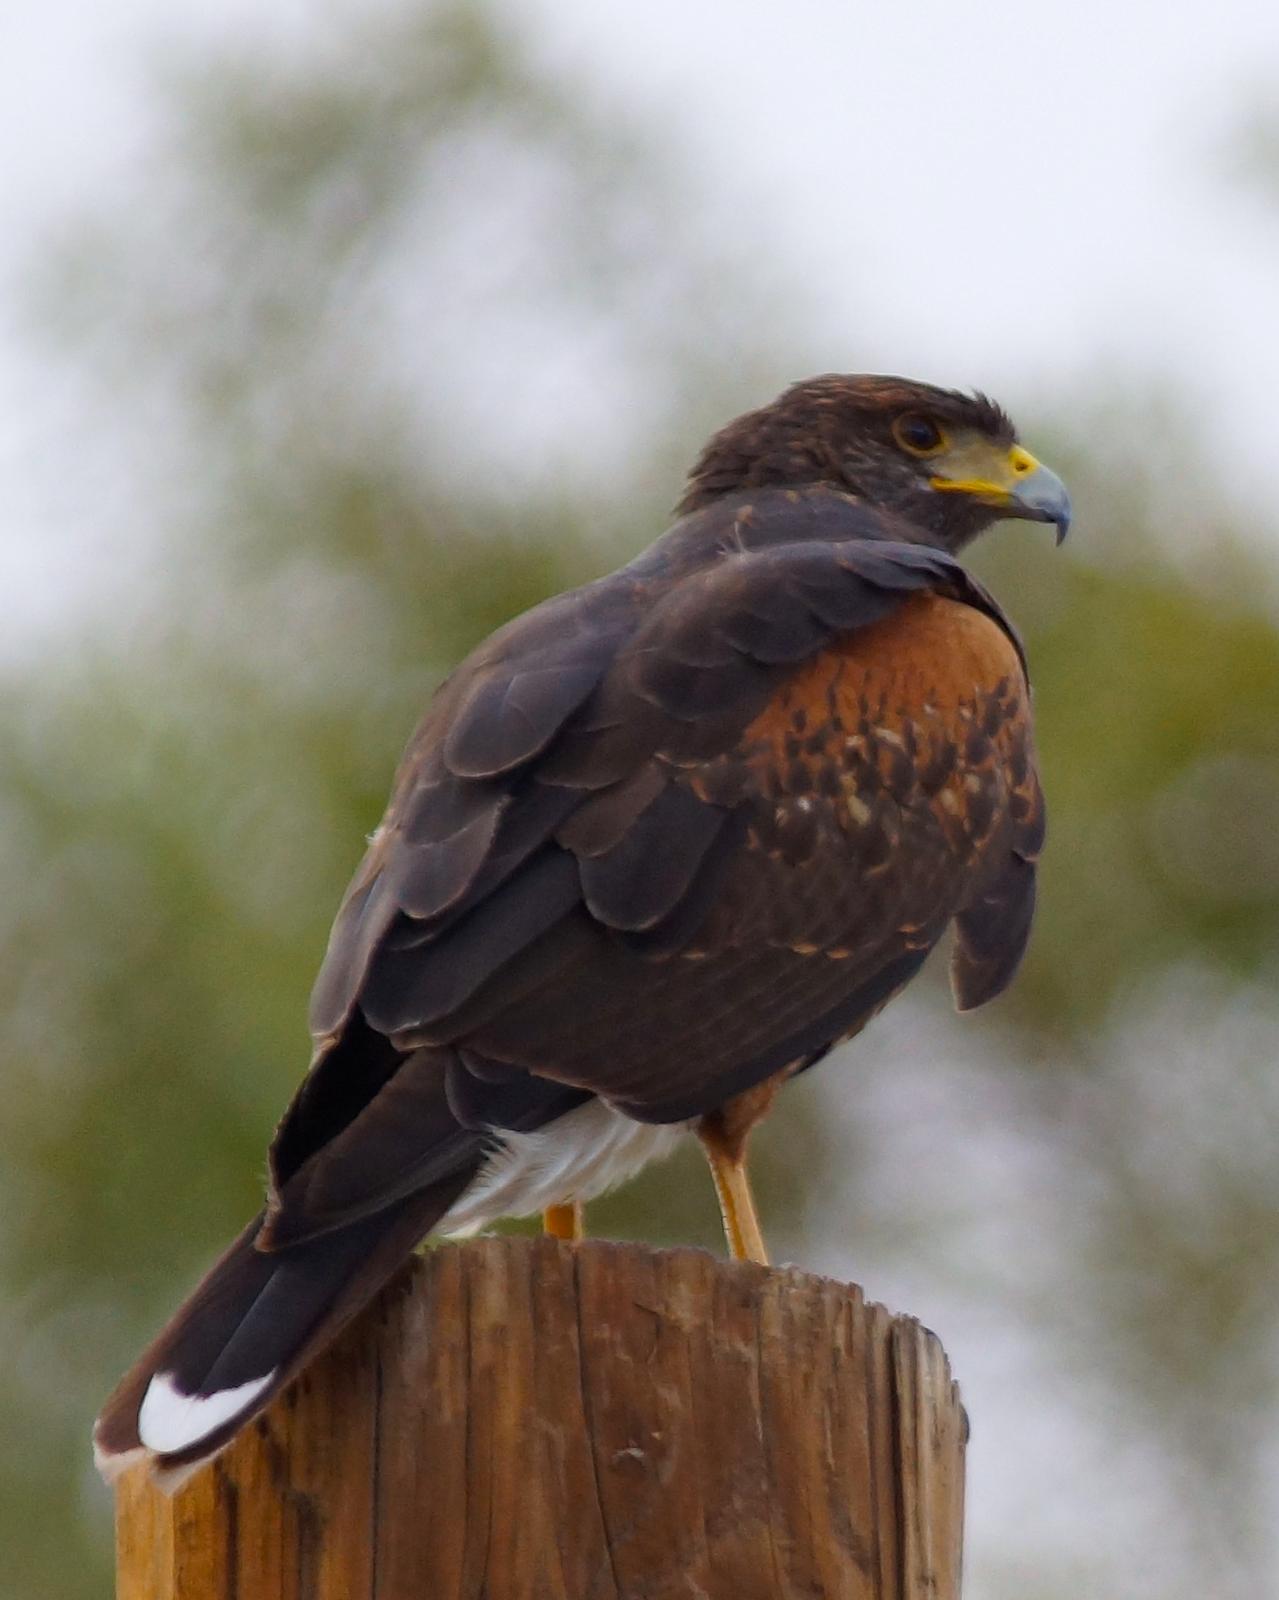 Harris's Hawk Photo by Gerald Hoekstra